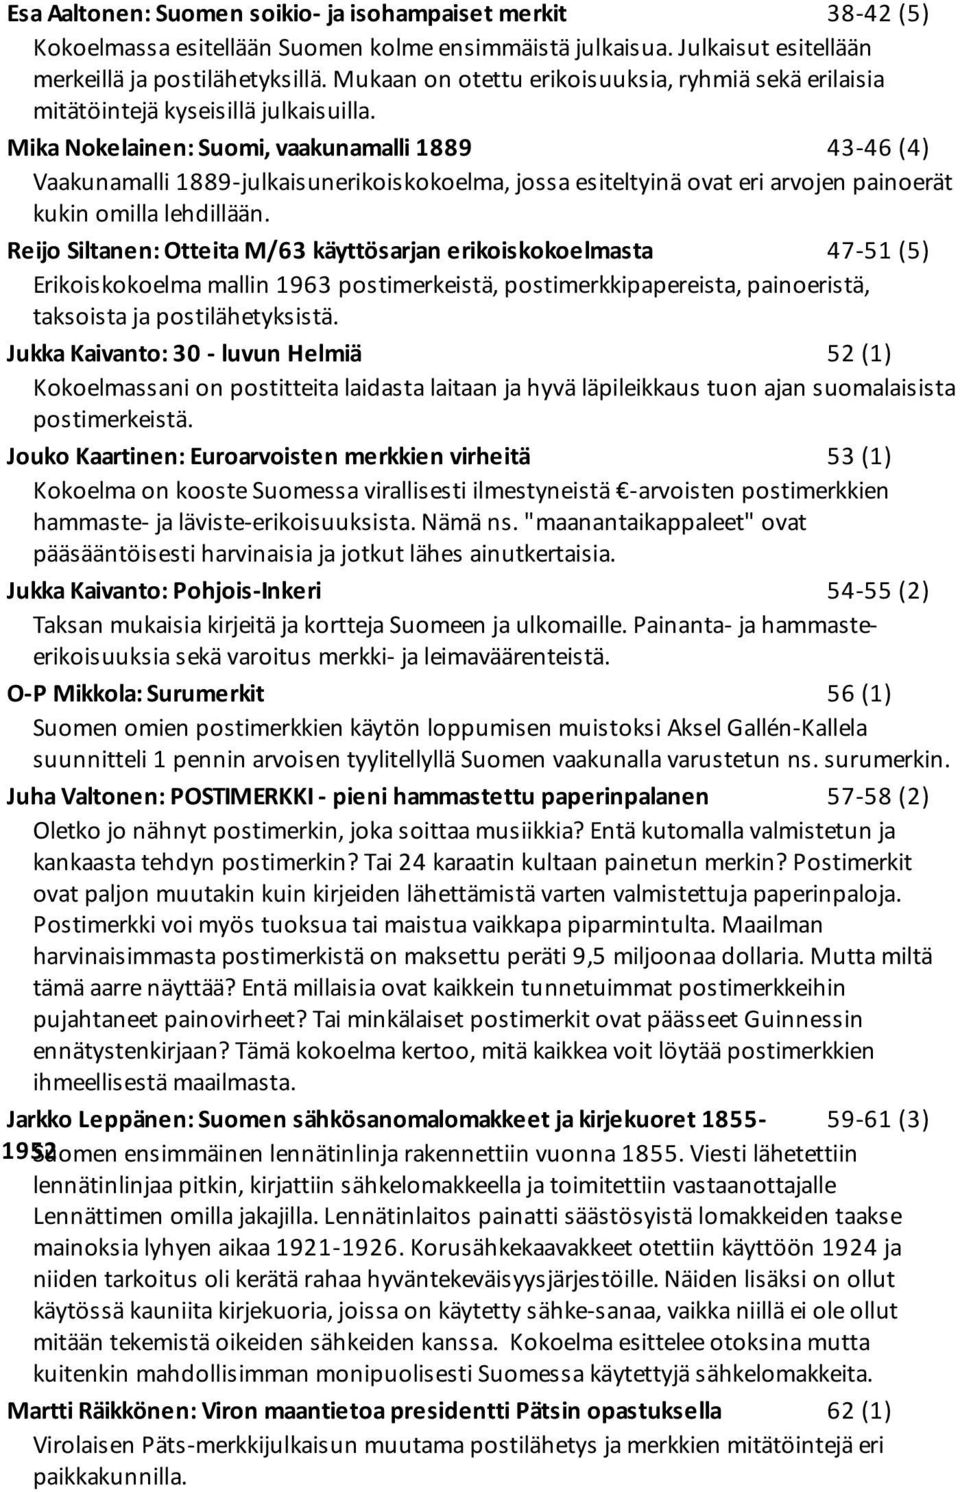 Mika Nokelainen: Suomi, vaakunamalli 1889 43-46 (4) Vaakunamalli 1889-julkaisunerikoiskokoelma, jossa esiteltyinä ovat eri arvojen painoerät kukin omilla lehdillään.